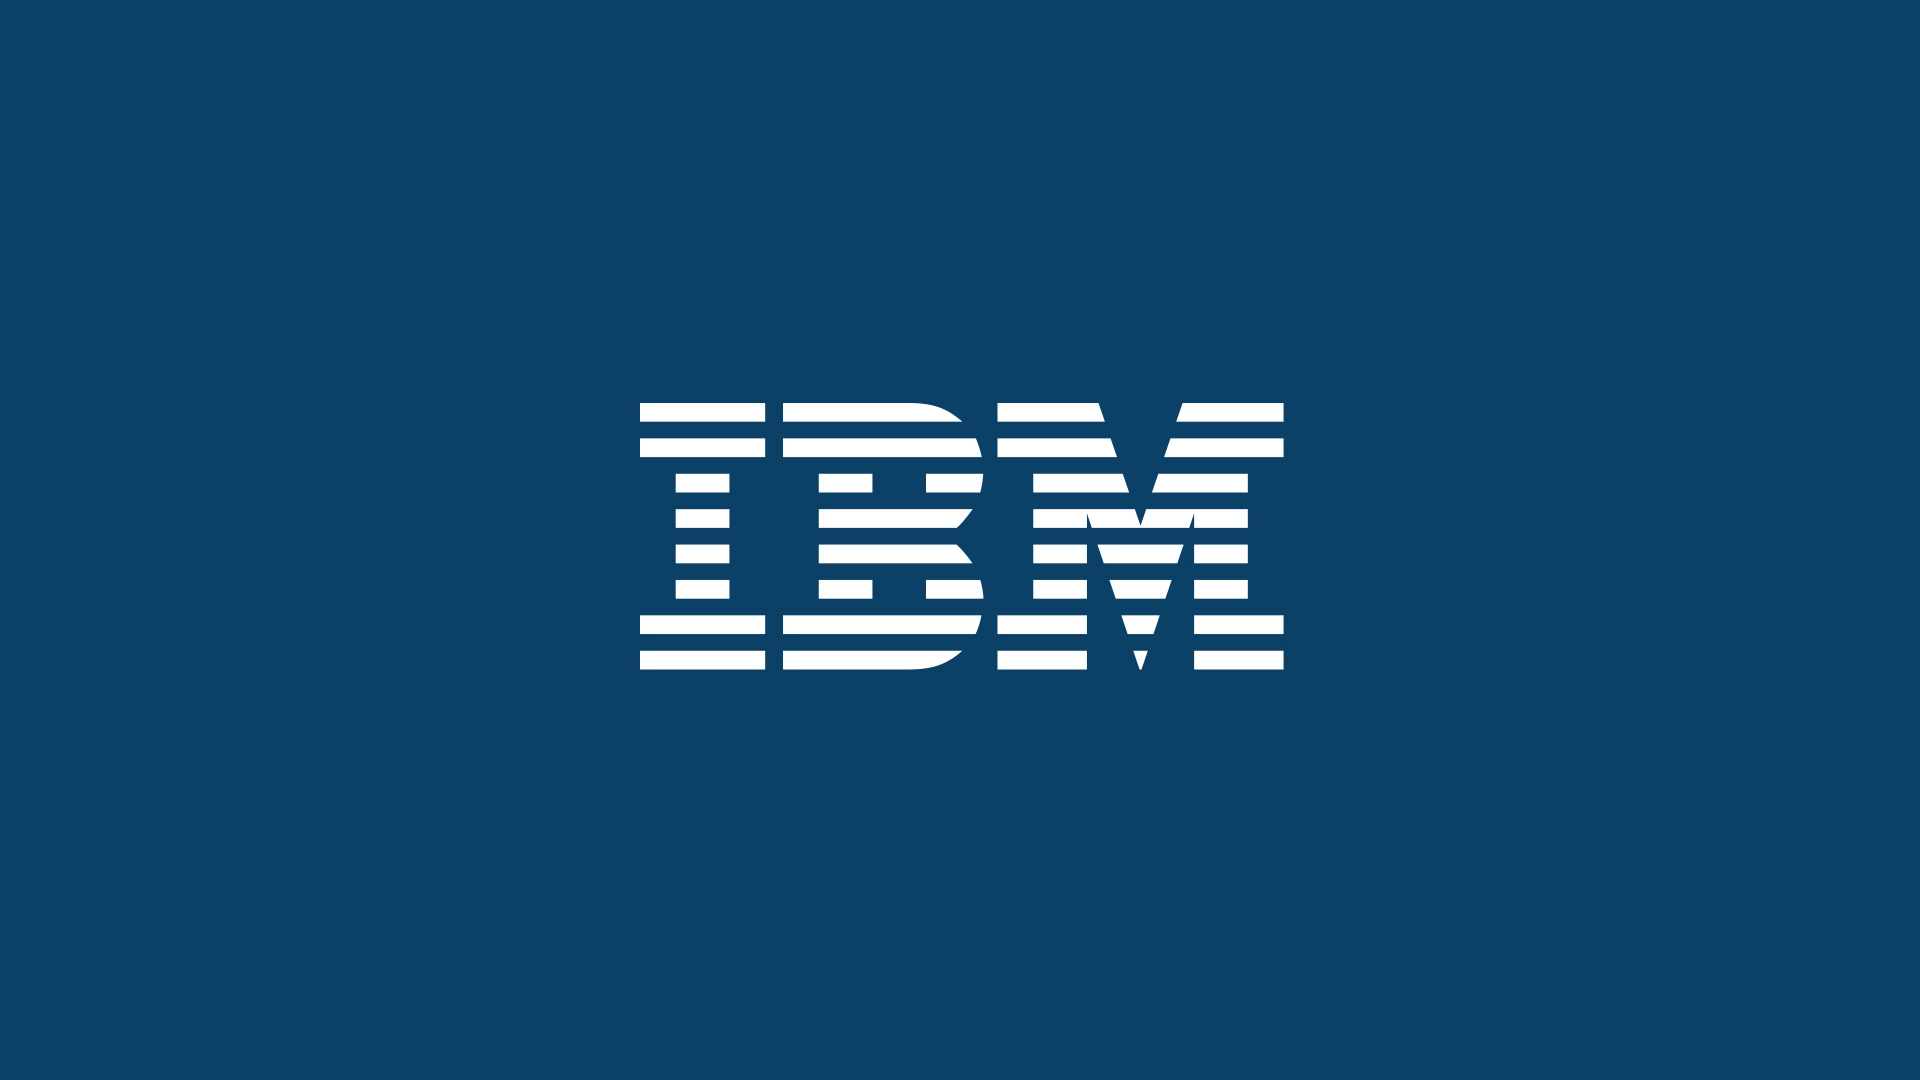 આઇ.ટી. ક્ષેત્રે દુનિયાભરમાં જાણીતી IBM કંપની અમદાવાદમાં વિશ્વ કક્ષાની અત્યાધુનિક સોફ્ટવેર લેબ સ્થાપશે